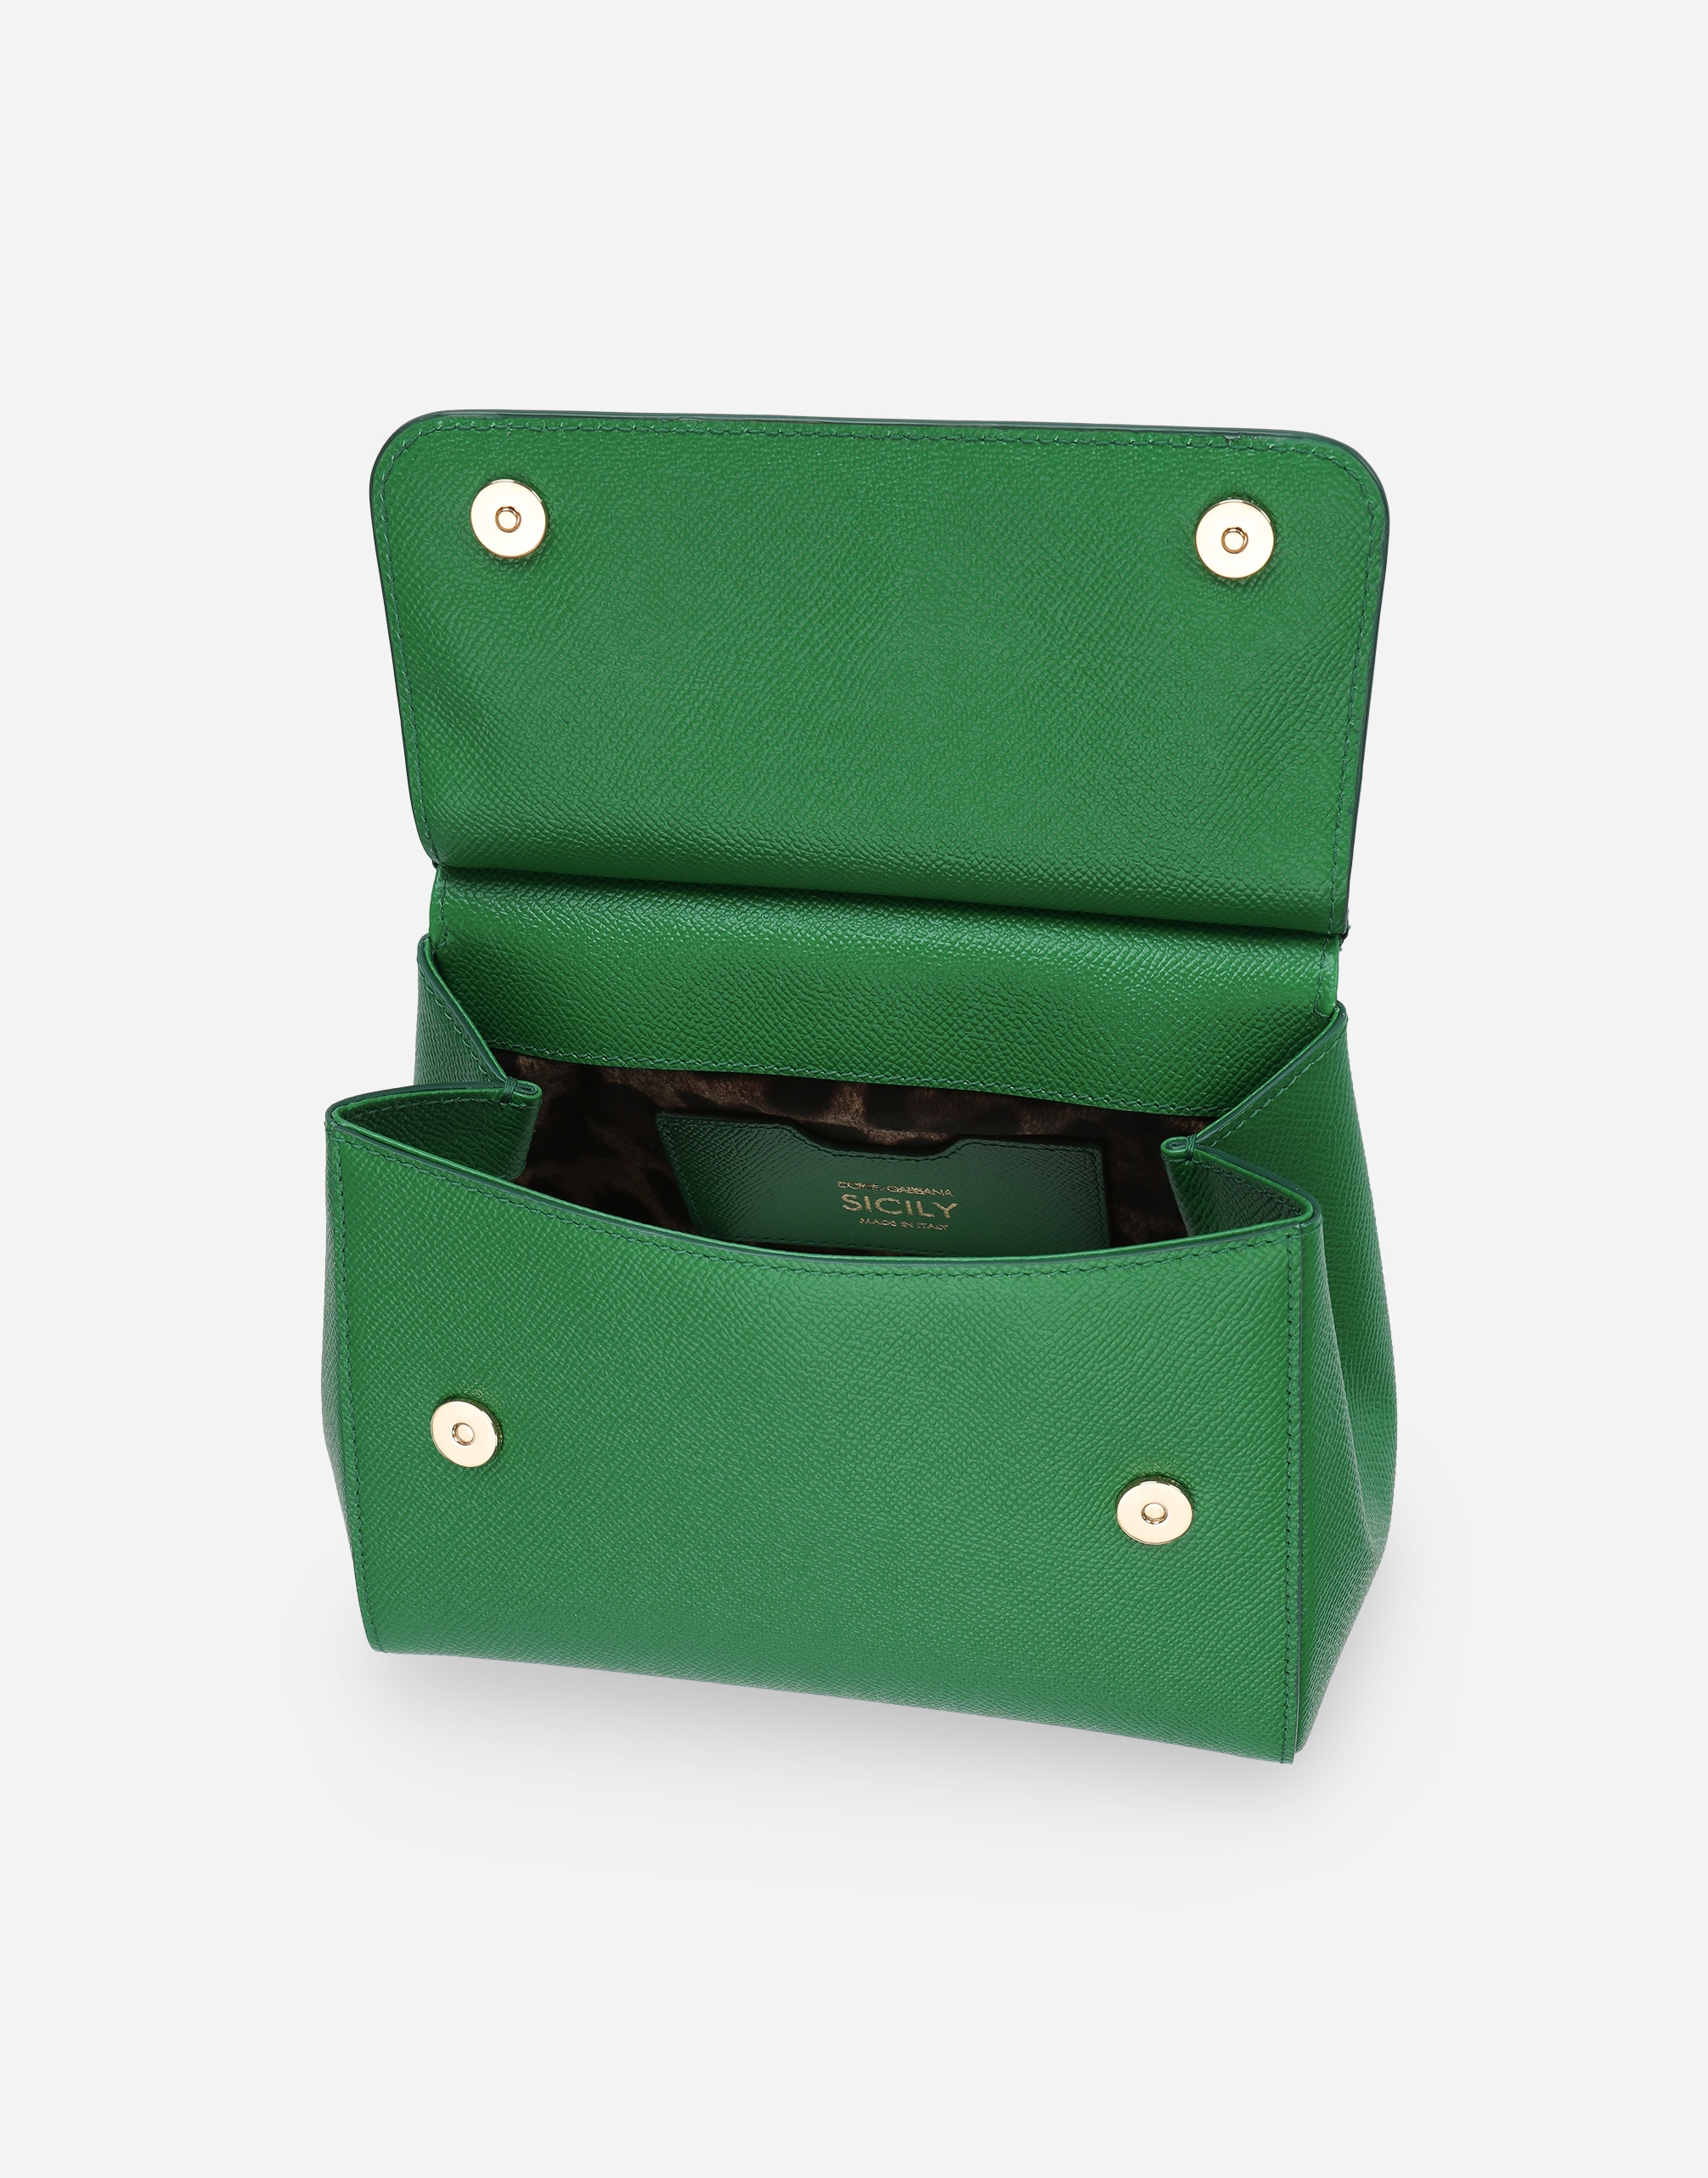 Shop Dolce & Gabbana Medium Sicily Handbag In Green